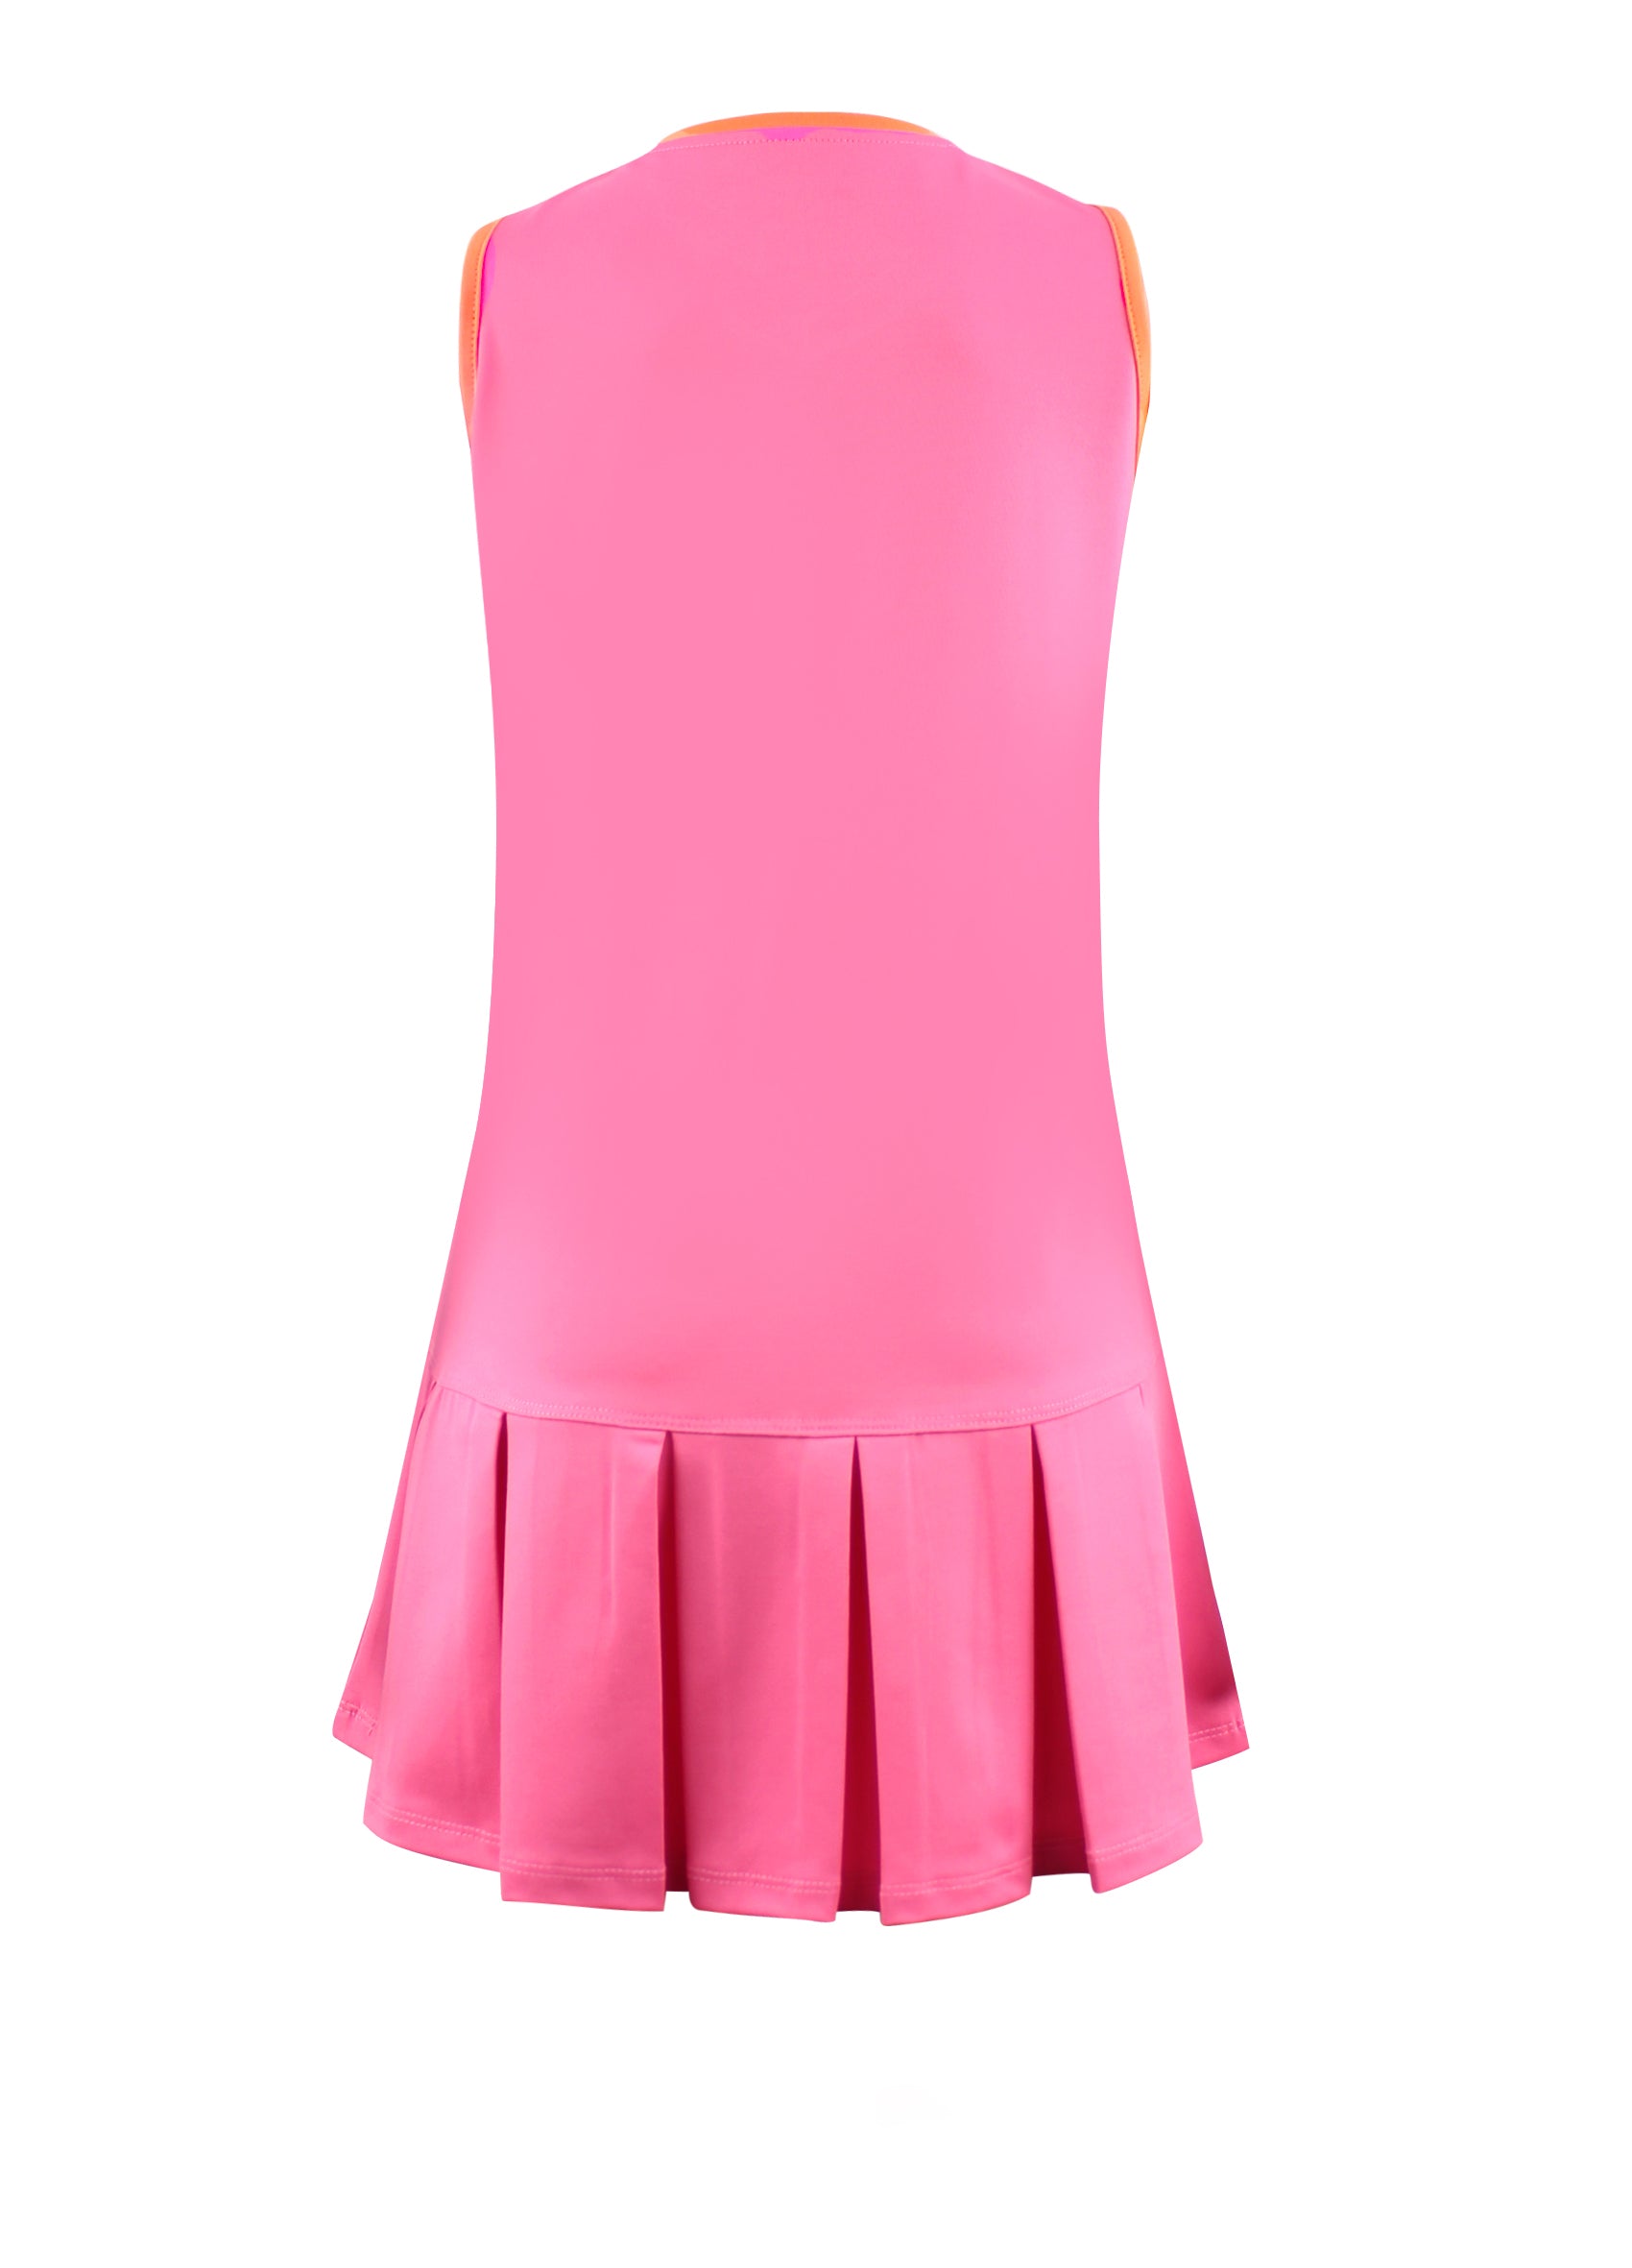 #Flamingo Beach Pink Dress - New! - Little Miss Tennis